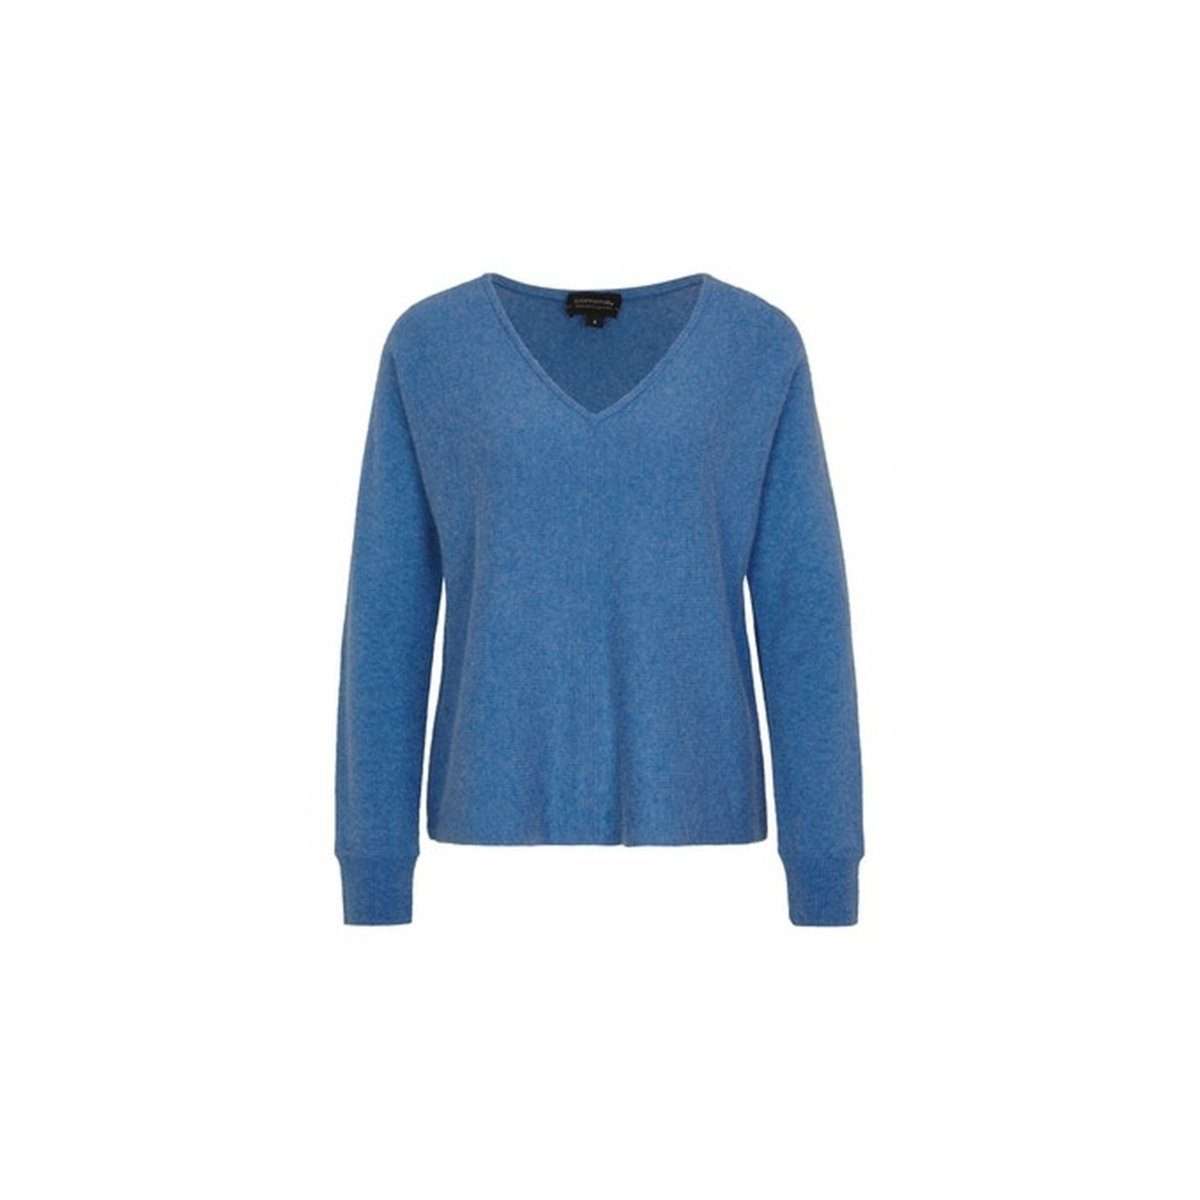 Длинный свитер синий другой (1 шт.)